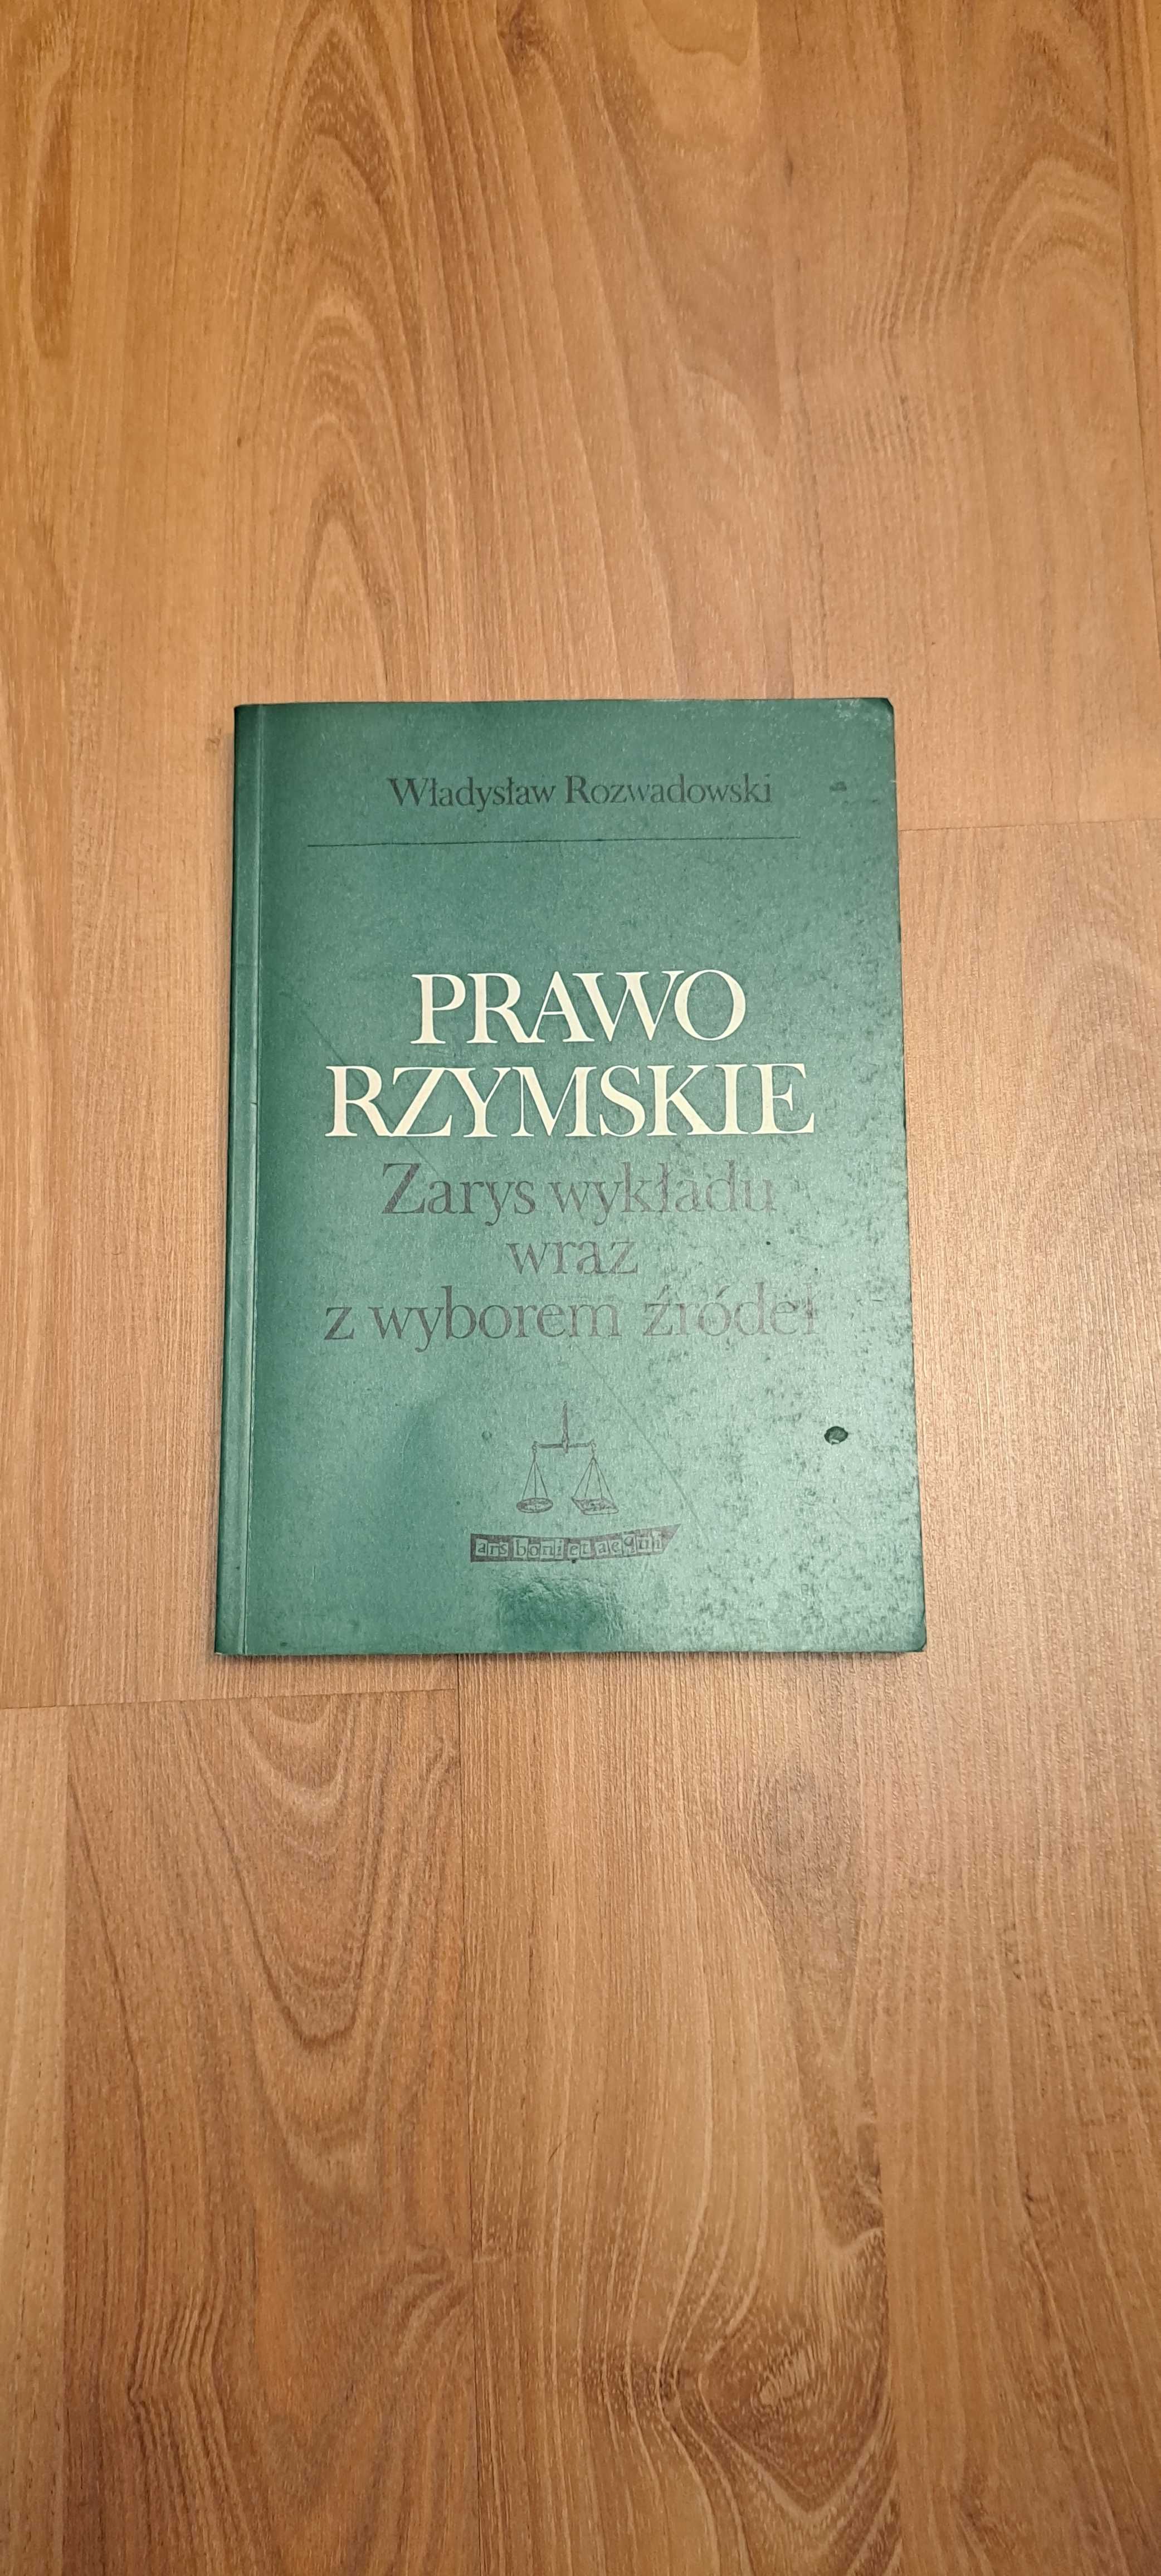 Prawo rzymskie - Rozwadowski